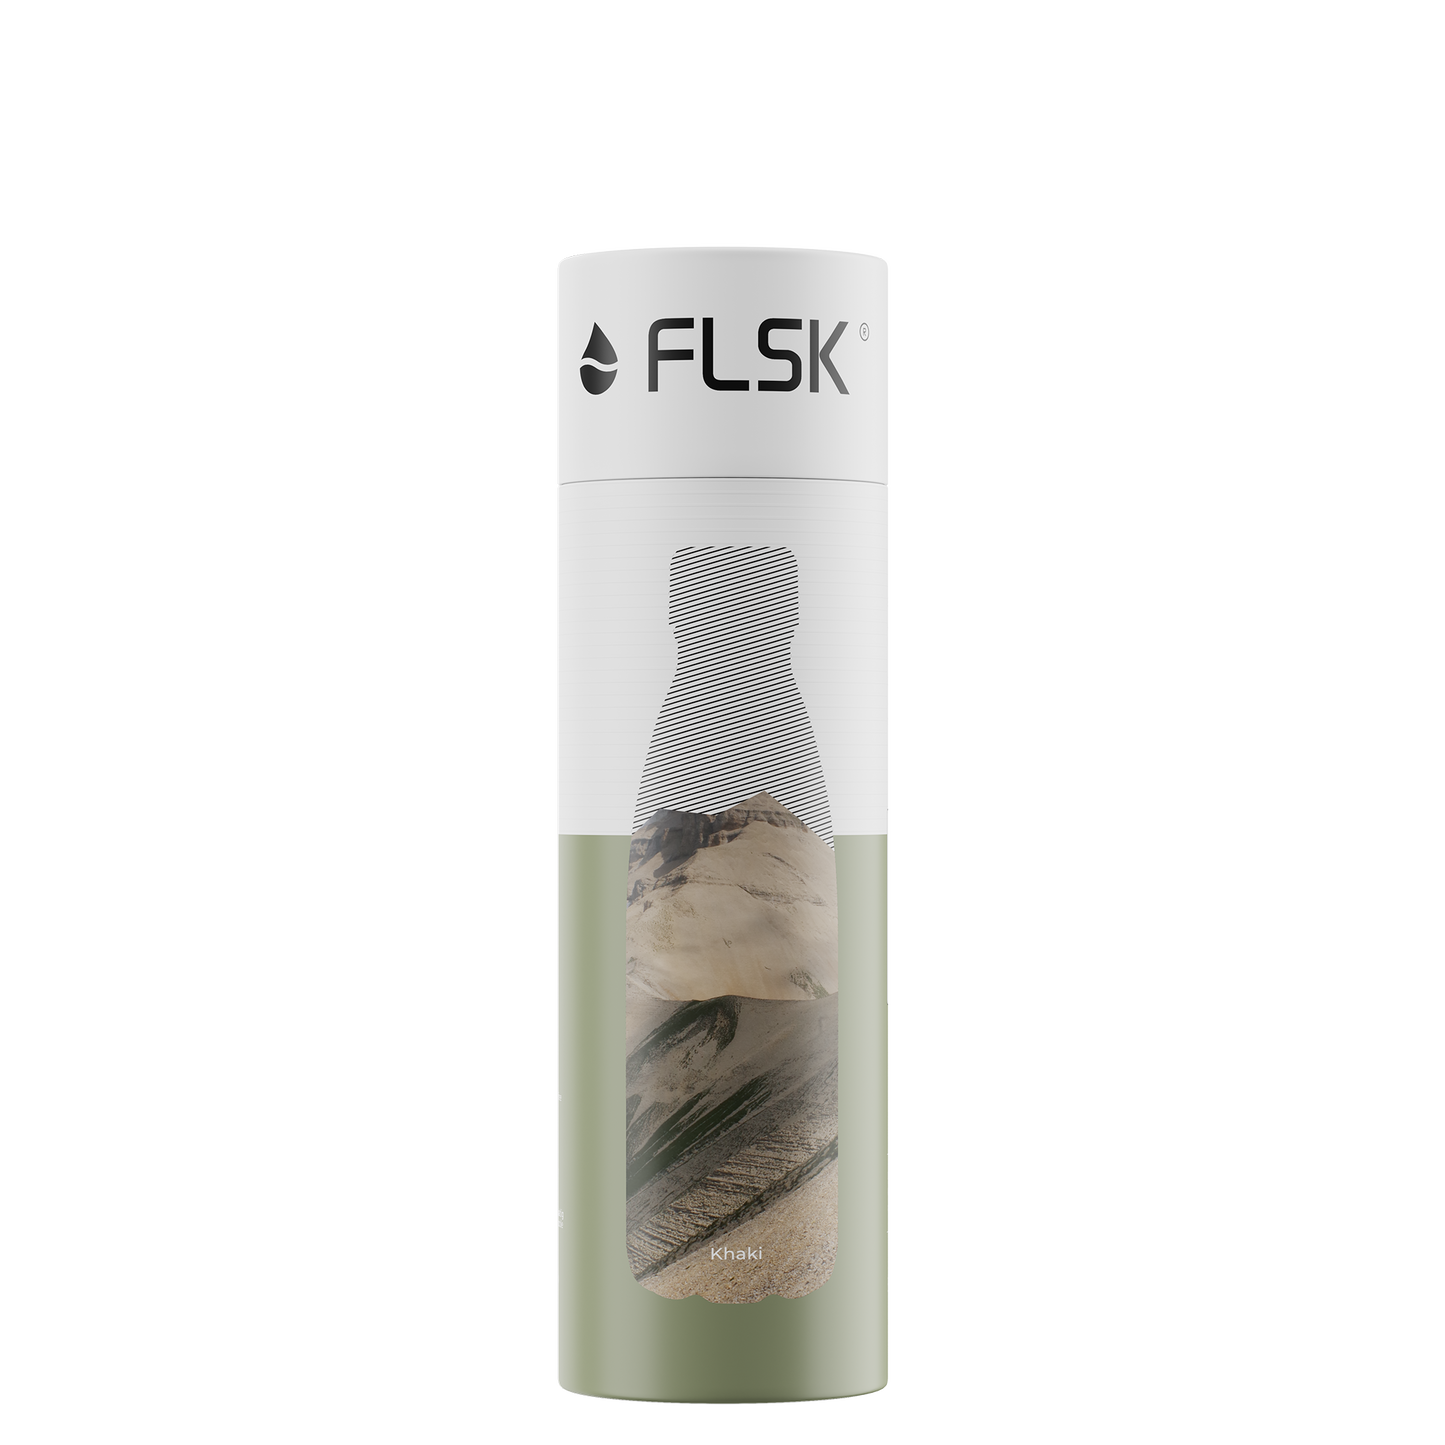 FLSK drinking bottle